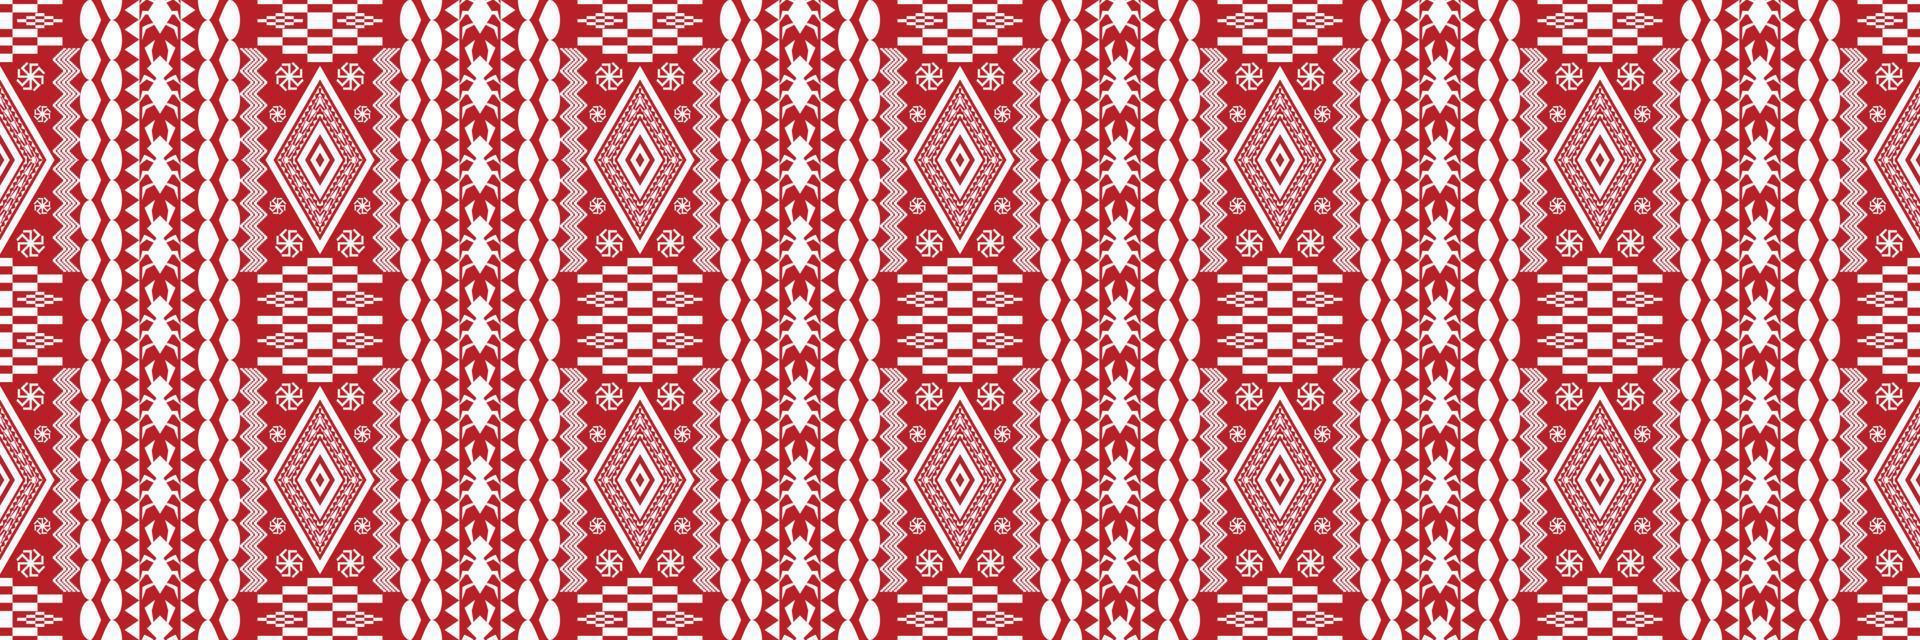 padrão tradicional oriental étnico geométrico figura estilo de bordado tribal design para papel de parede, roupas, embrulho, tecido, ilustração vetorial vetor